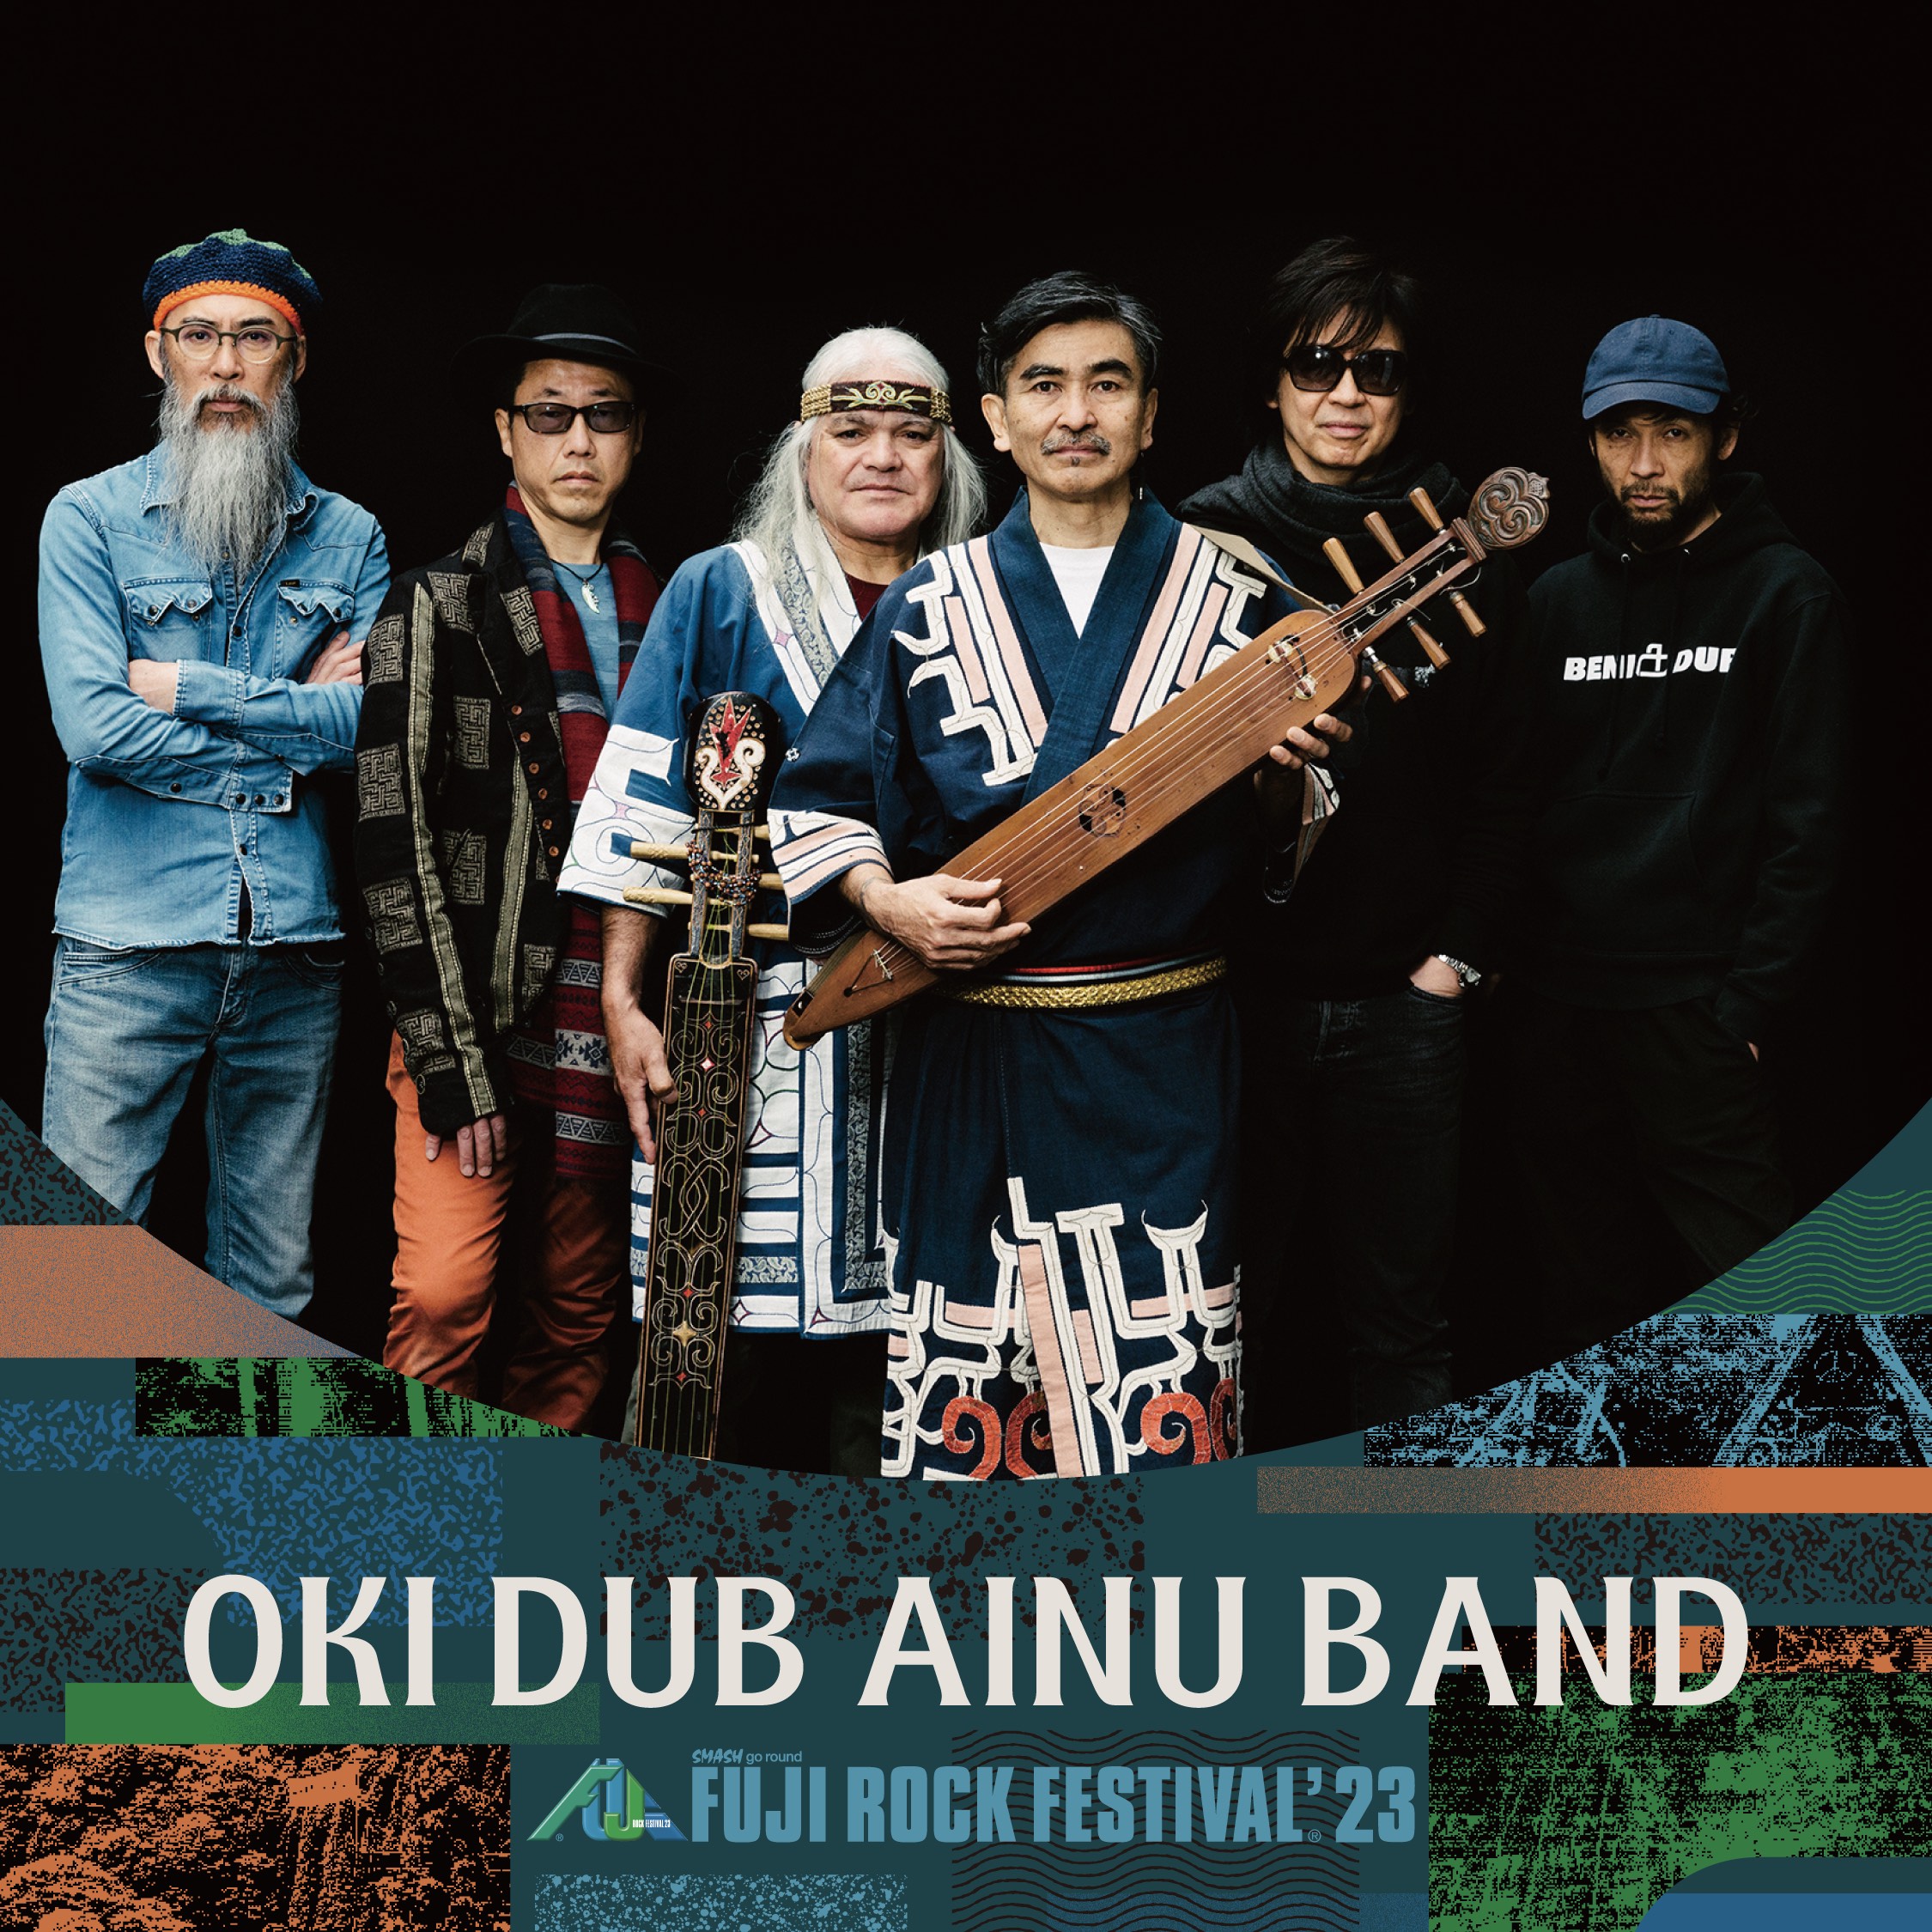 OKI DUB AINU BAND FUJI ROCK FESTIVAL ’23  7/28/29/30